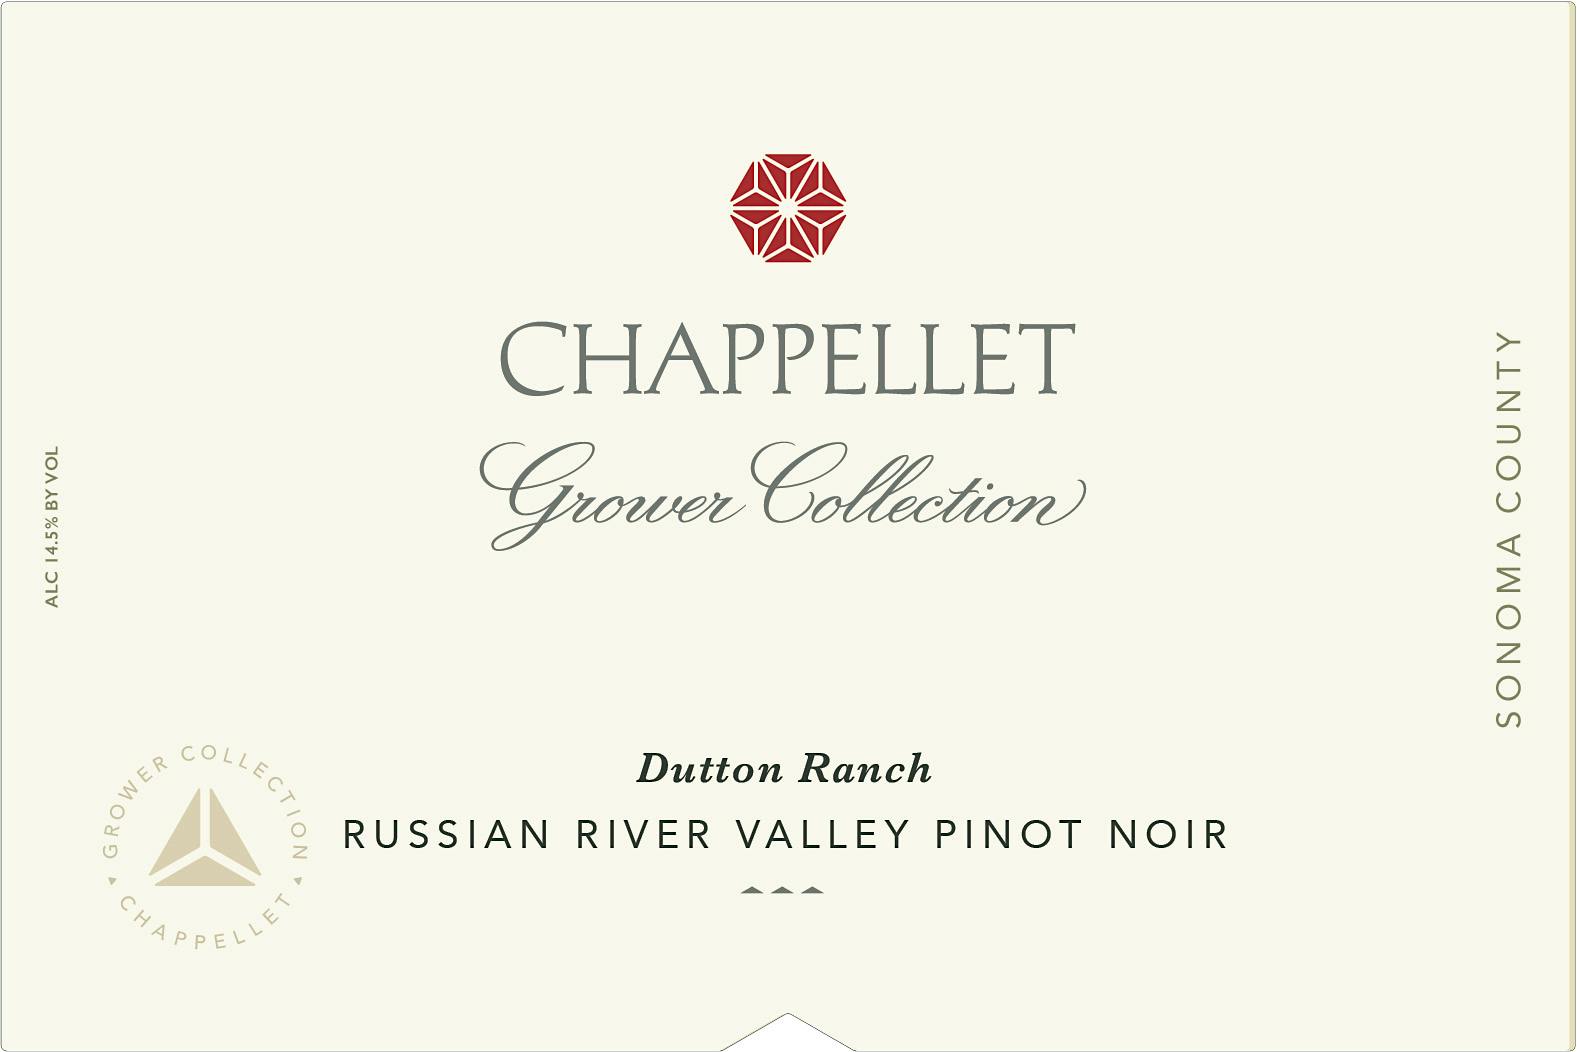 Label for Chappellet